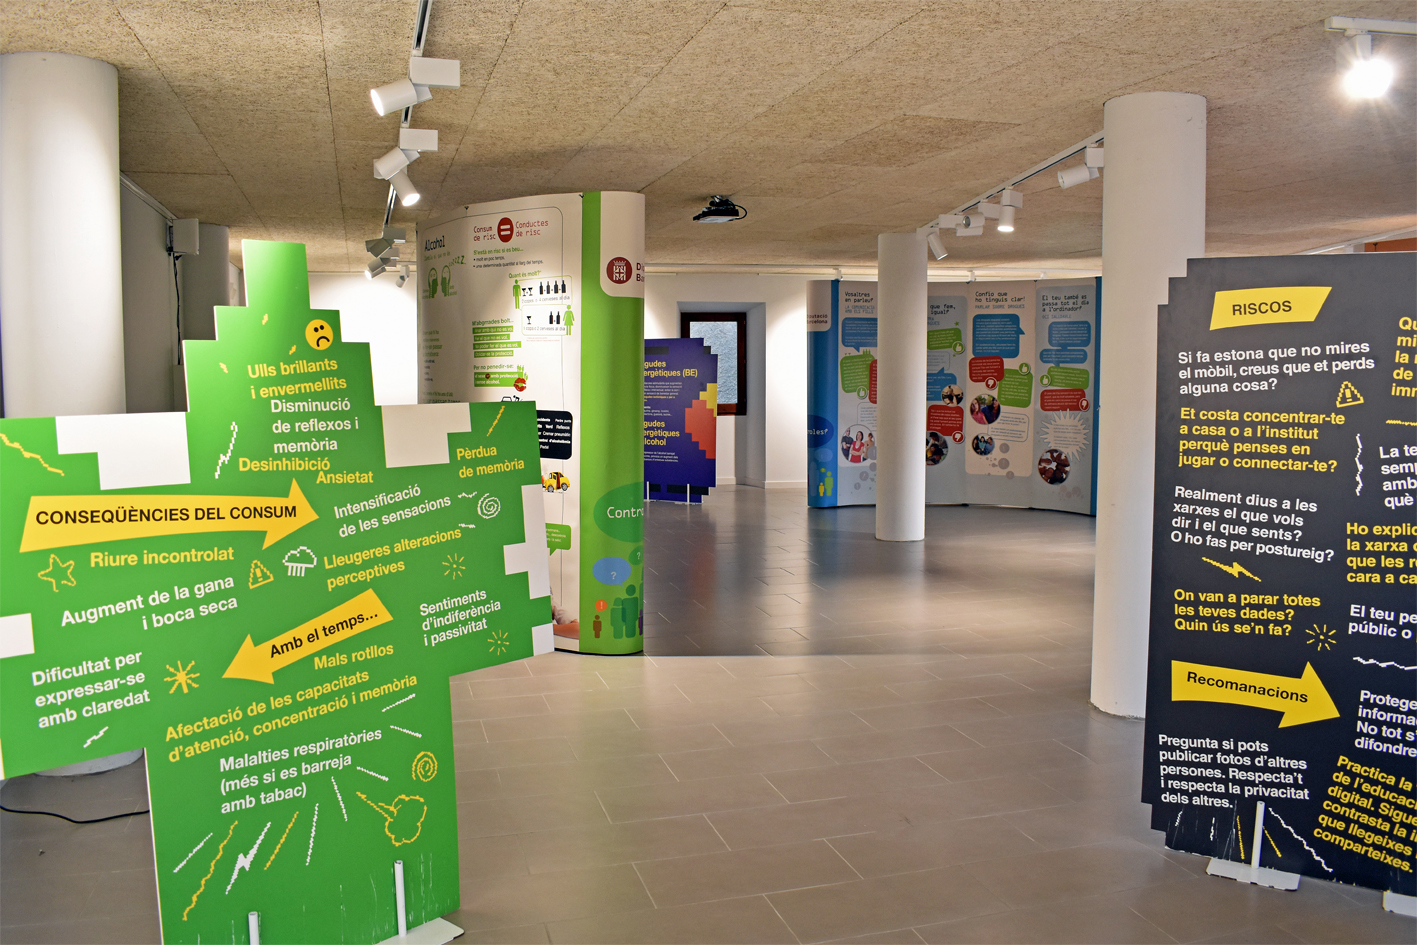 La sala Cal Balaguer del Porxo acull l'exposició interactiva 'Controles?' sobre els riscos de les drogues i la prevenció del consum